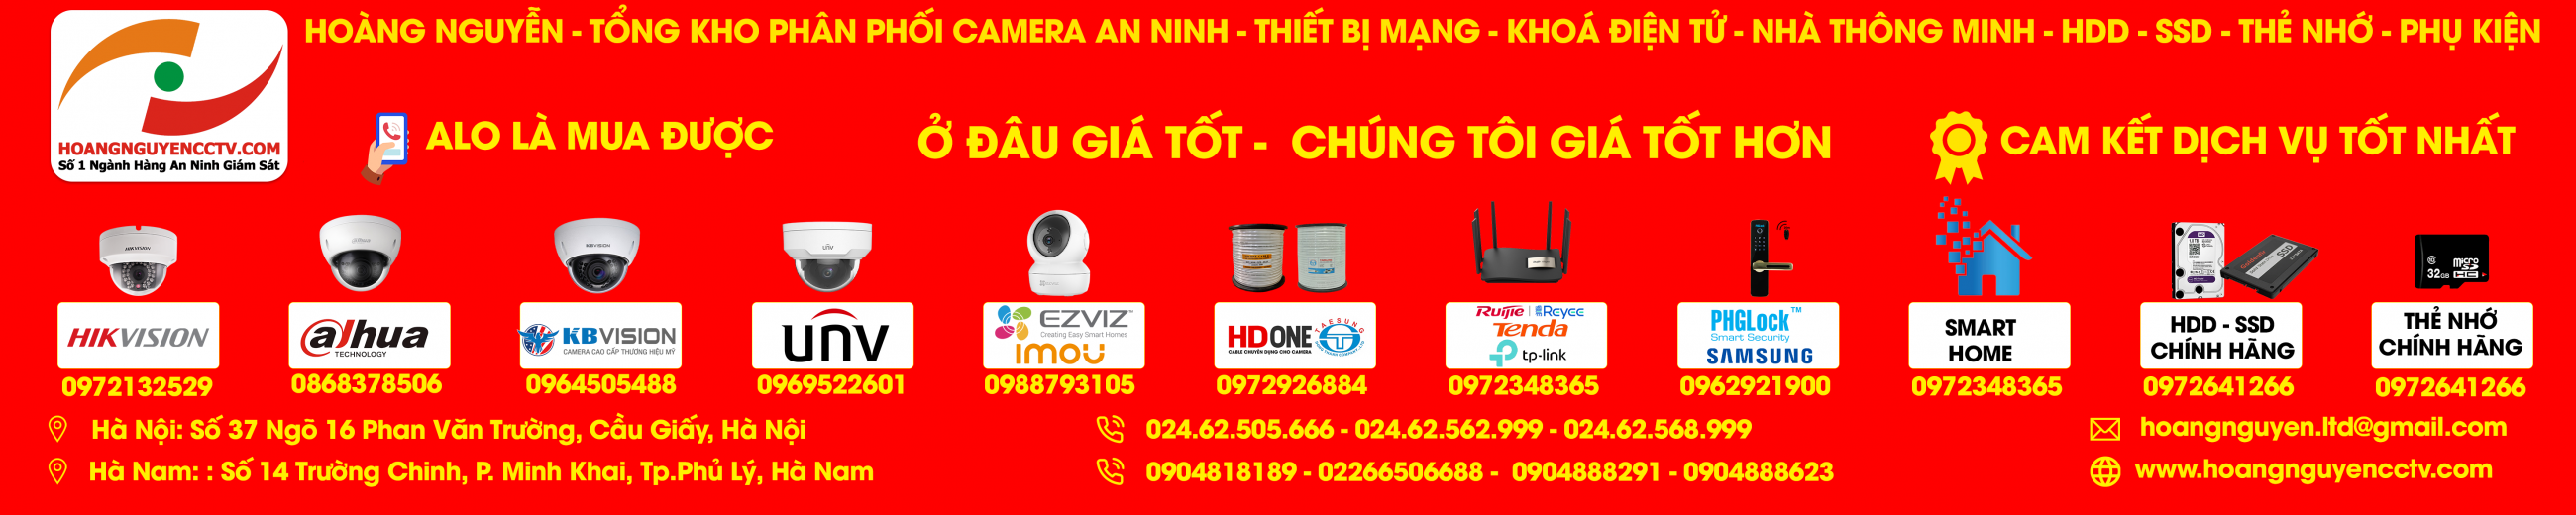 Hoàng Nguyễn CCTV - Số 1 Ngành hàng an ninh giám sát